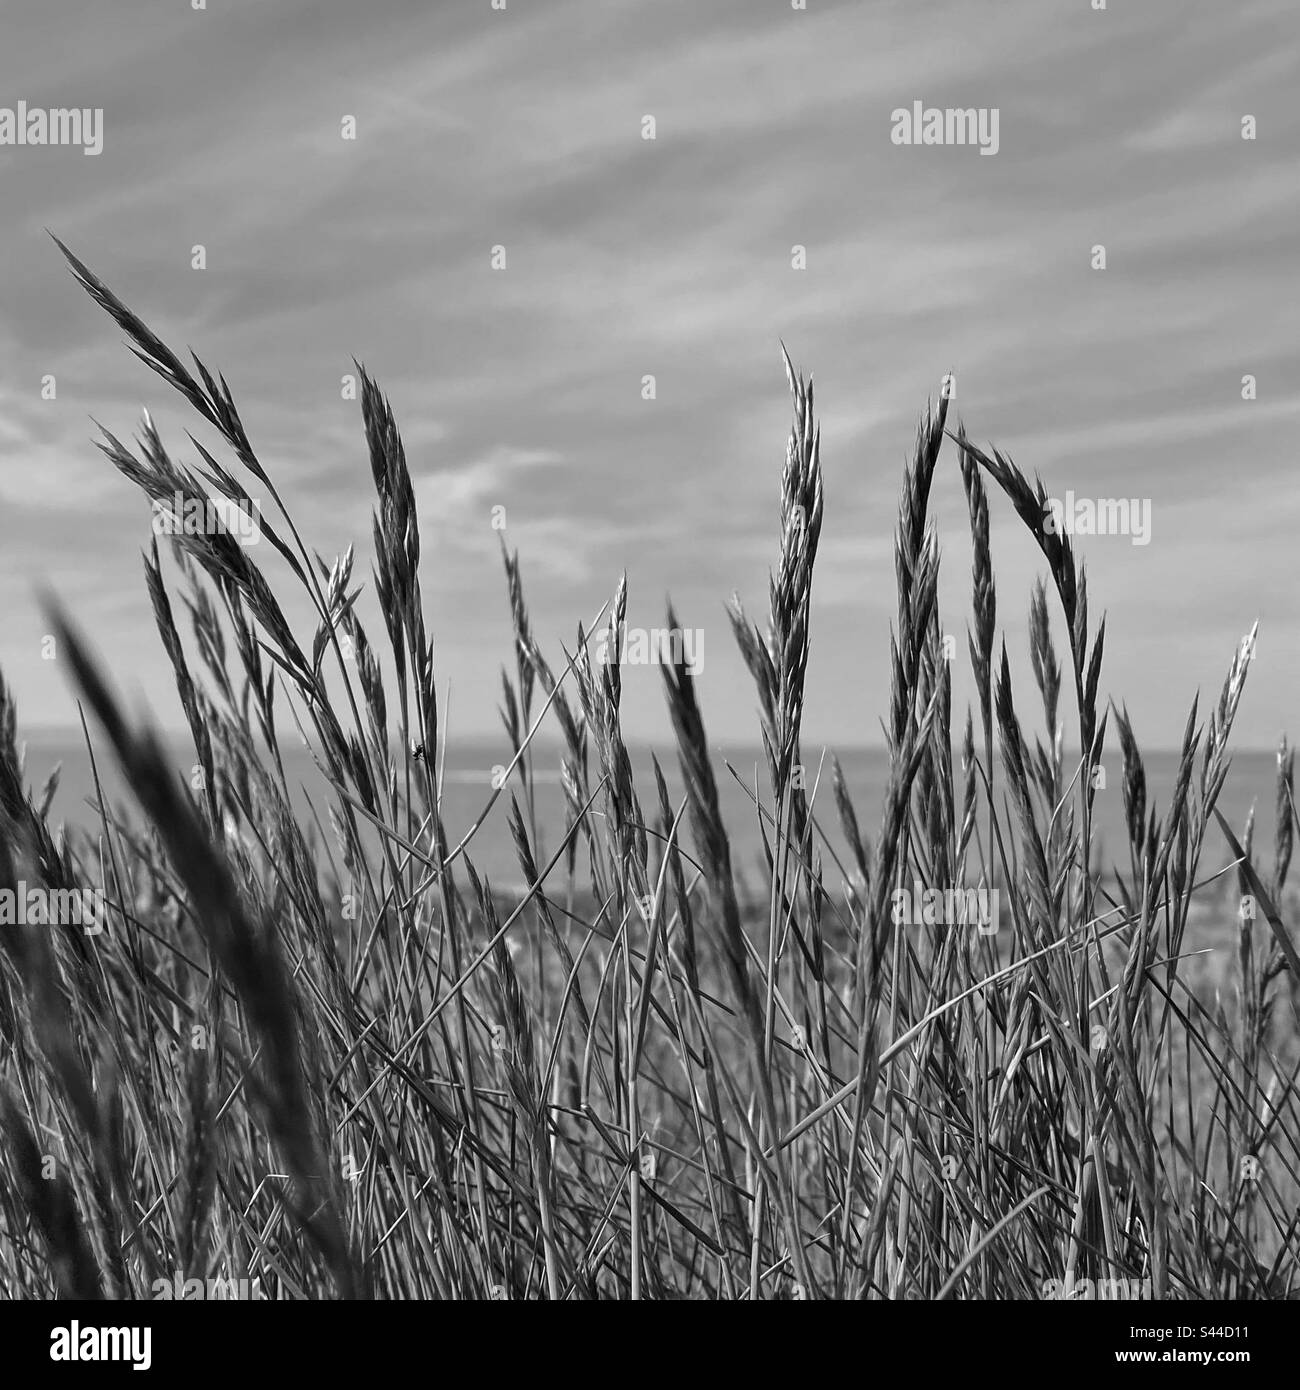 Una fotografia in bianco e nero di erba alta sulla costa con l'oceano sullo sfondo. Profondità di campo bassa. Foto Stock